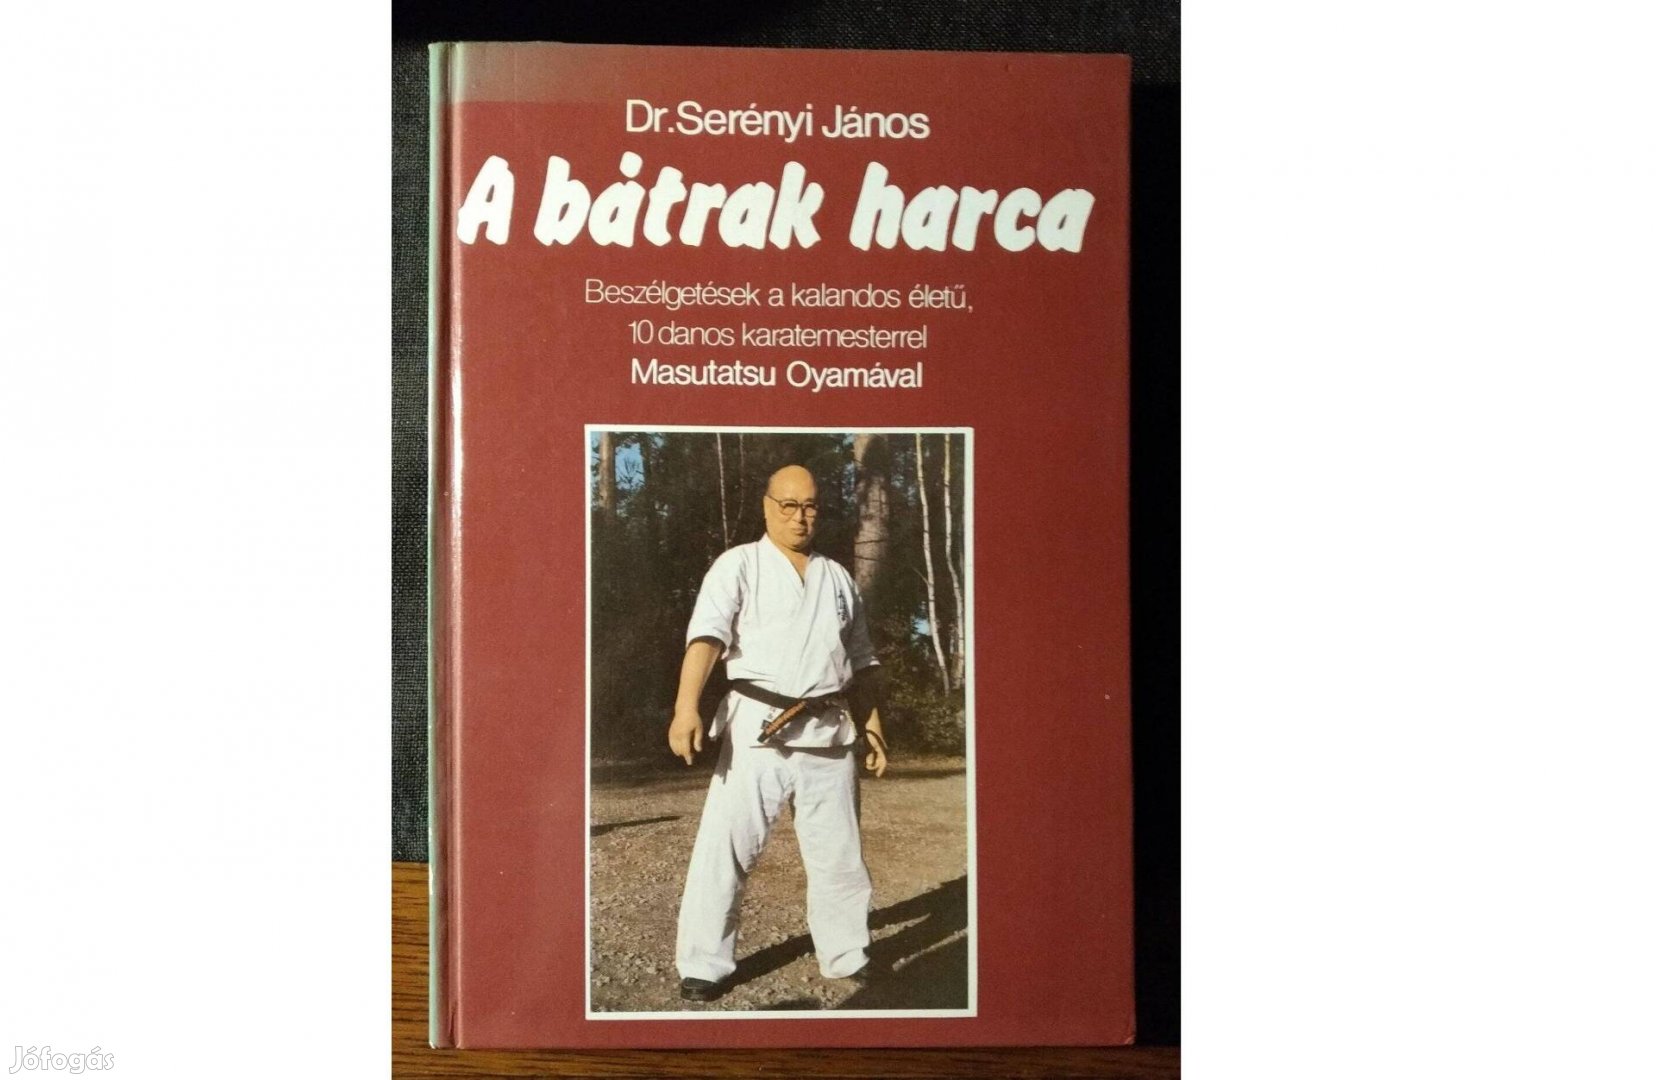 A bátrak harca Dr Serényi János